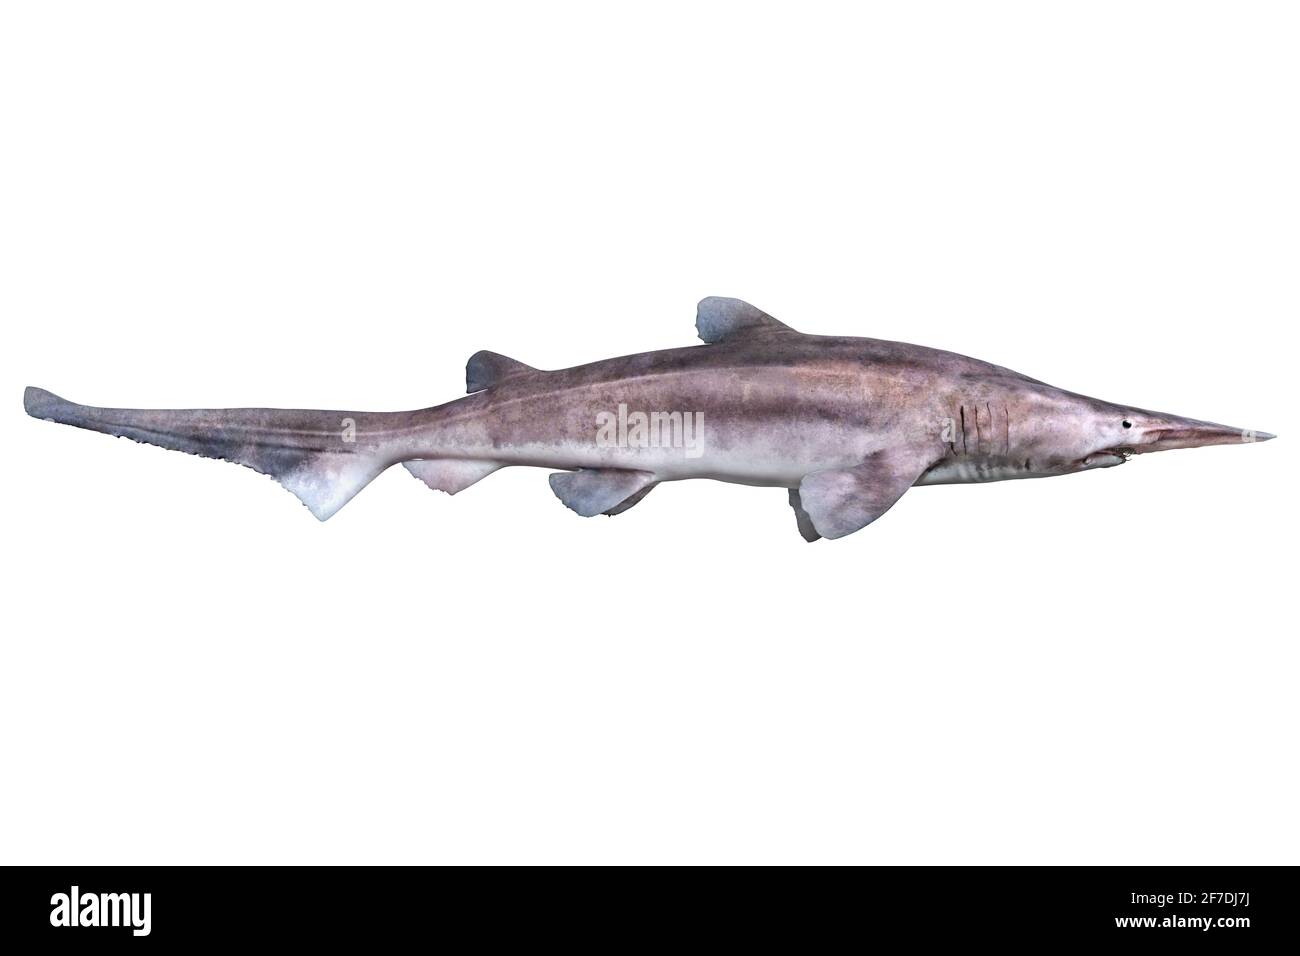 Tiefsee-Kobold-Hai, Mitsukurina owstoni, auf weißem Hintergrund Stockfoto